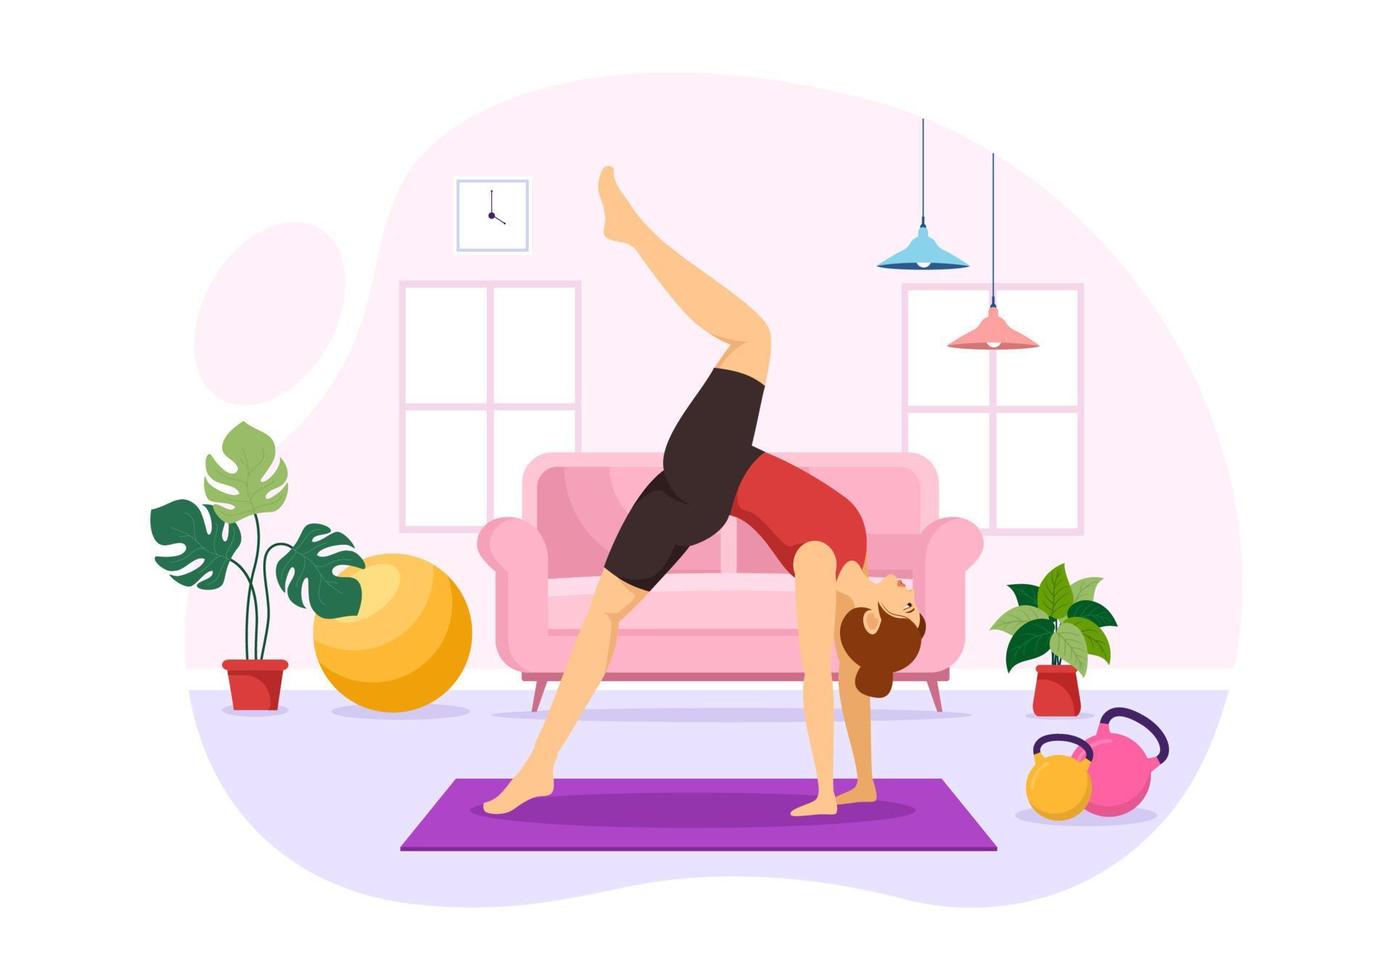 yoga- und meditationspraxisillustration mit gesundheitsvorteilen des körpers für webbanner oder zielseite in flachen handgezeichneten karikaturvorlagen vektor